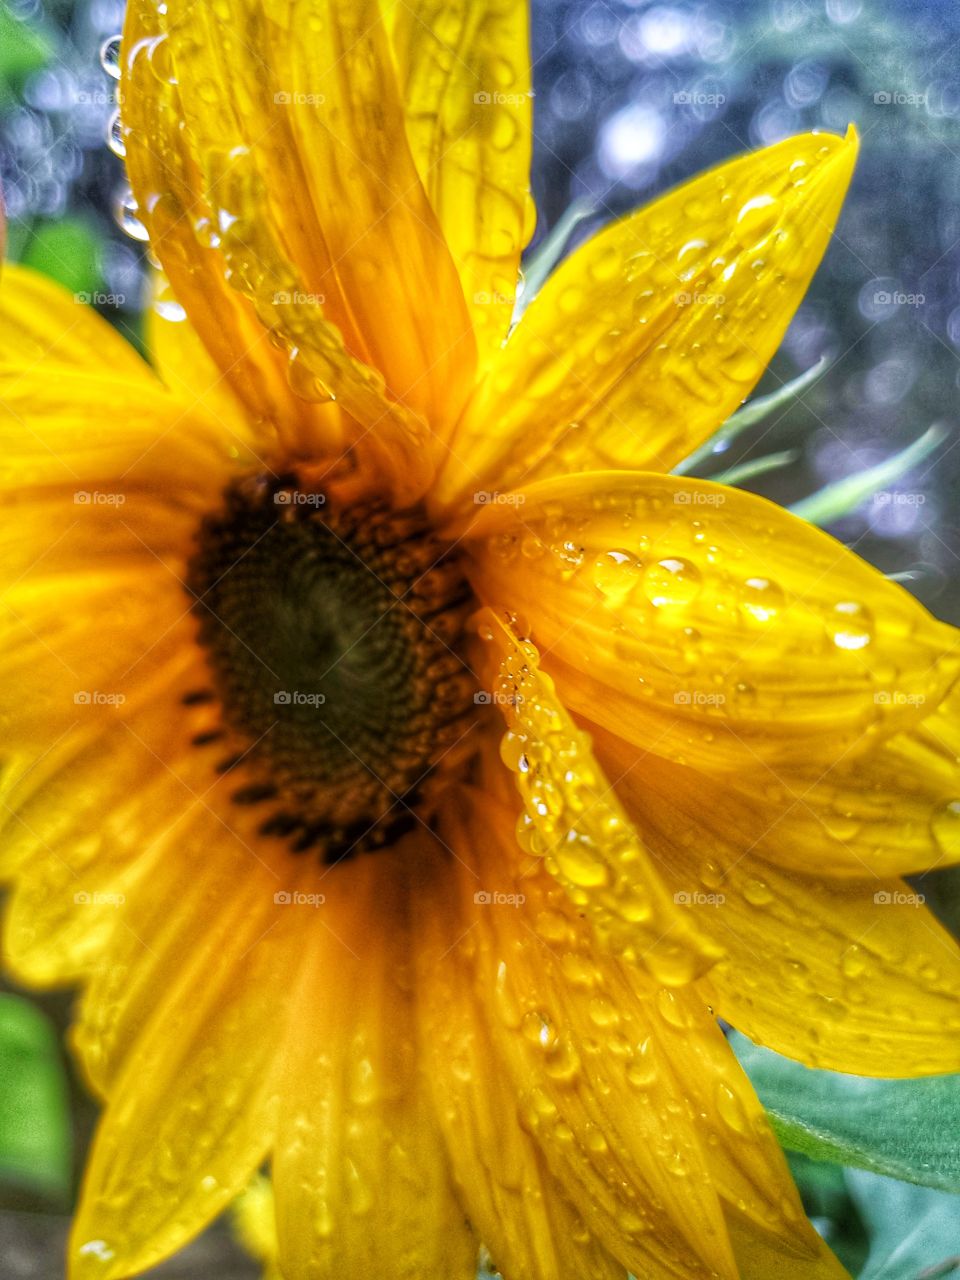 Rainy Days:
Rain drops on a sunflower.